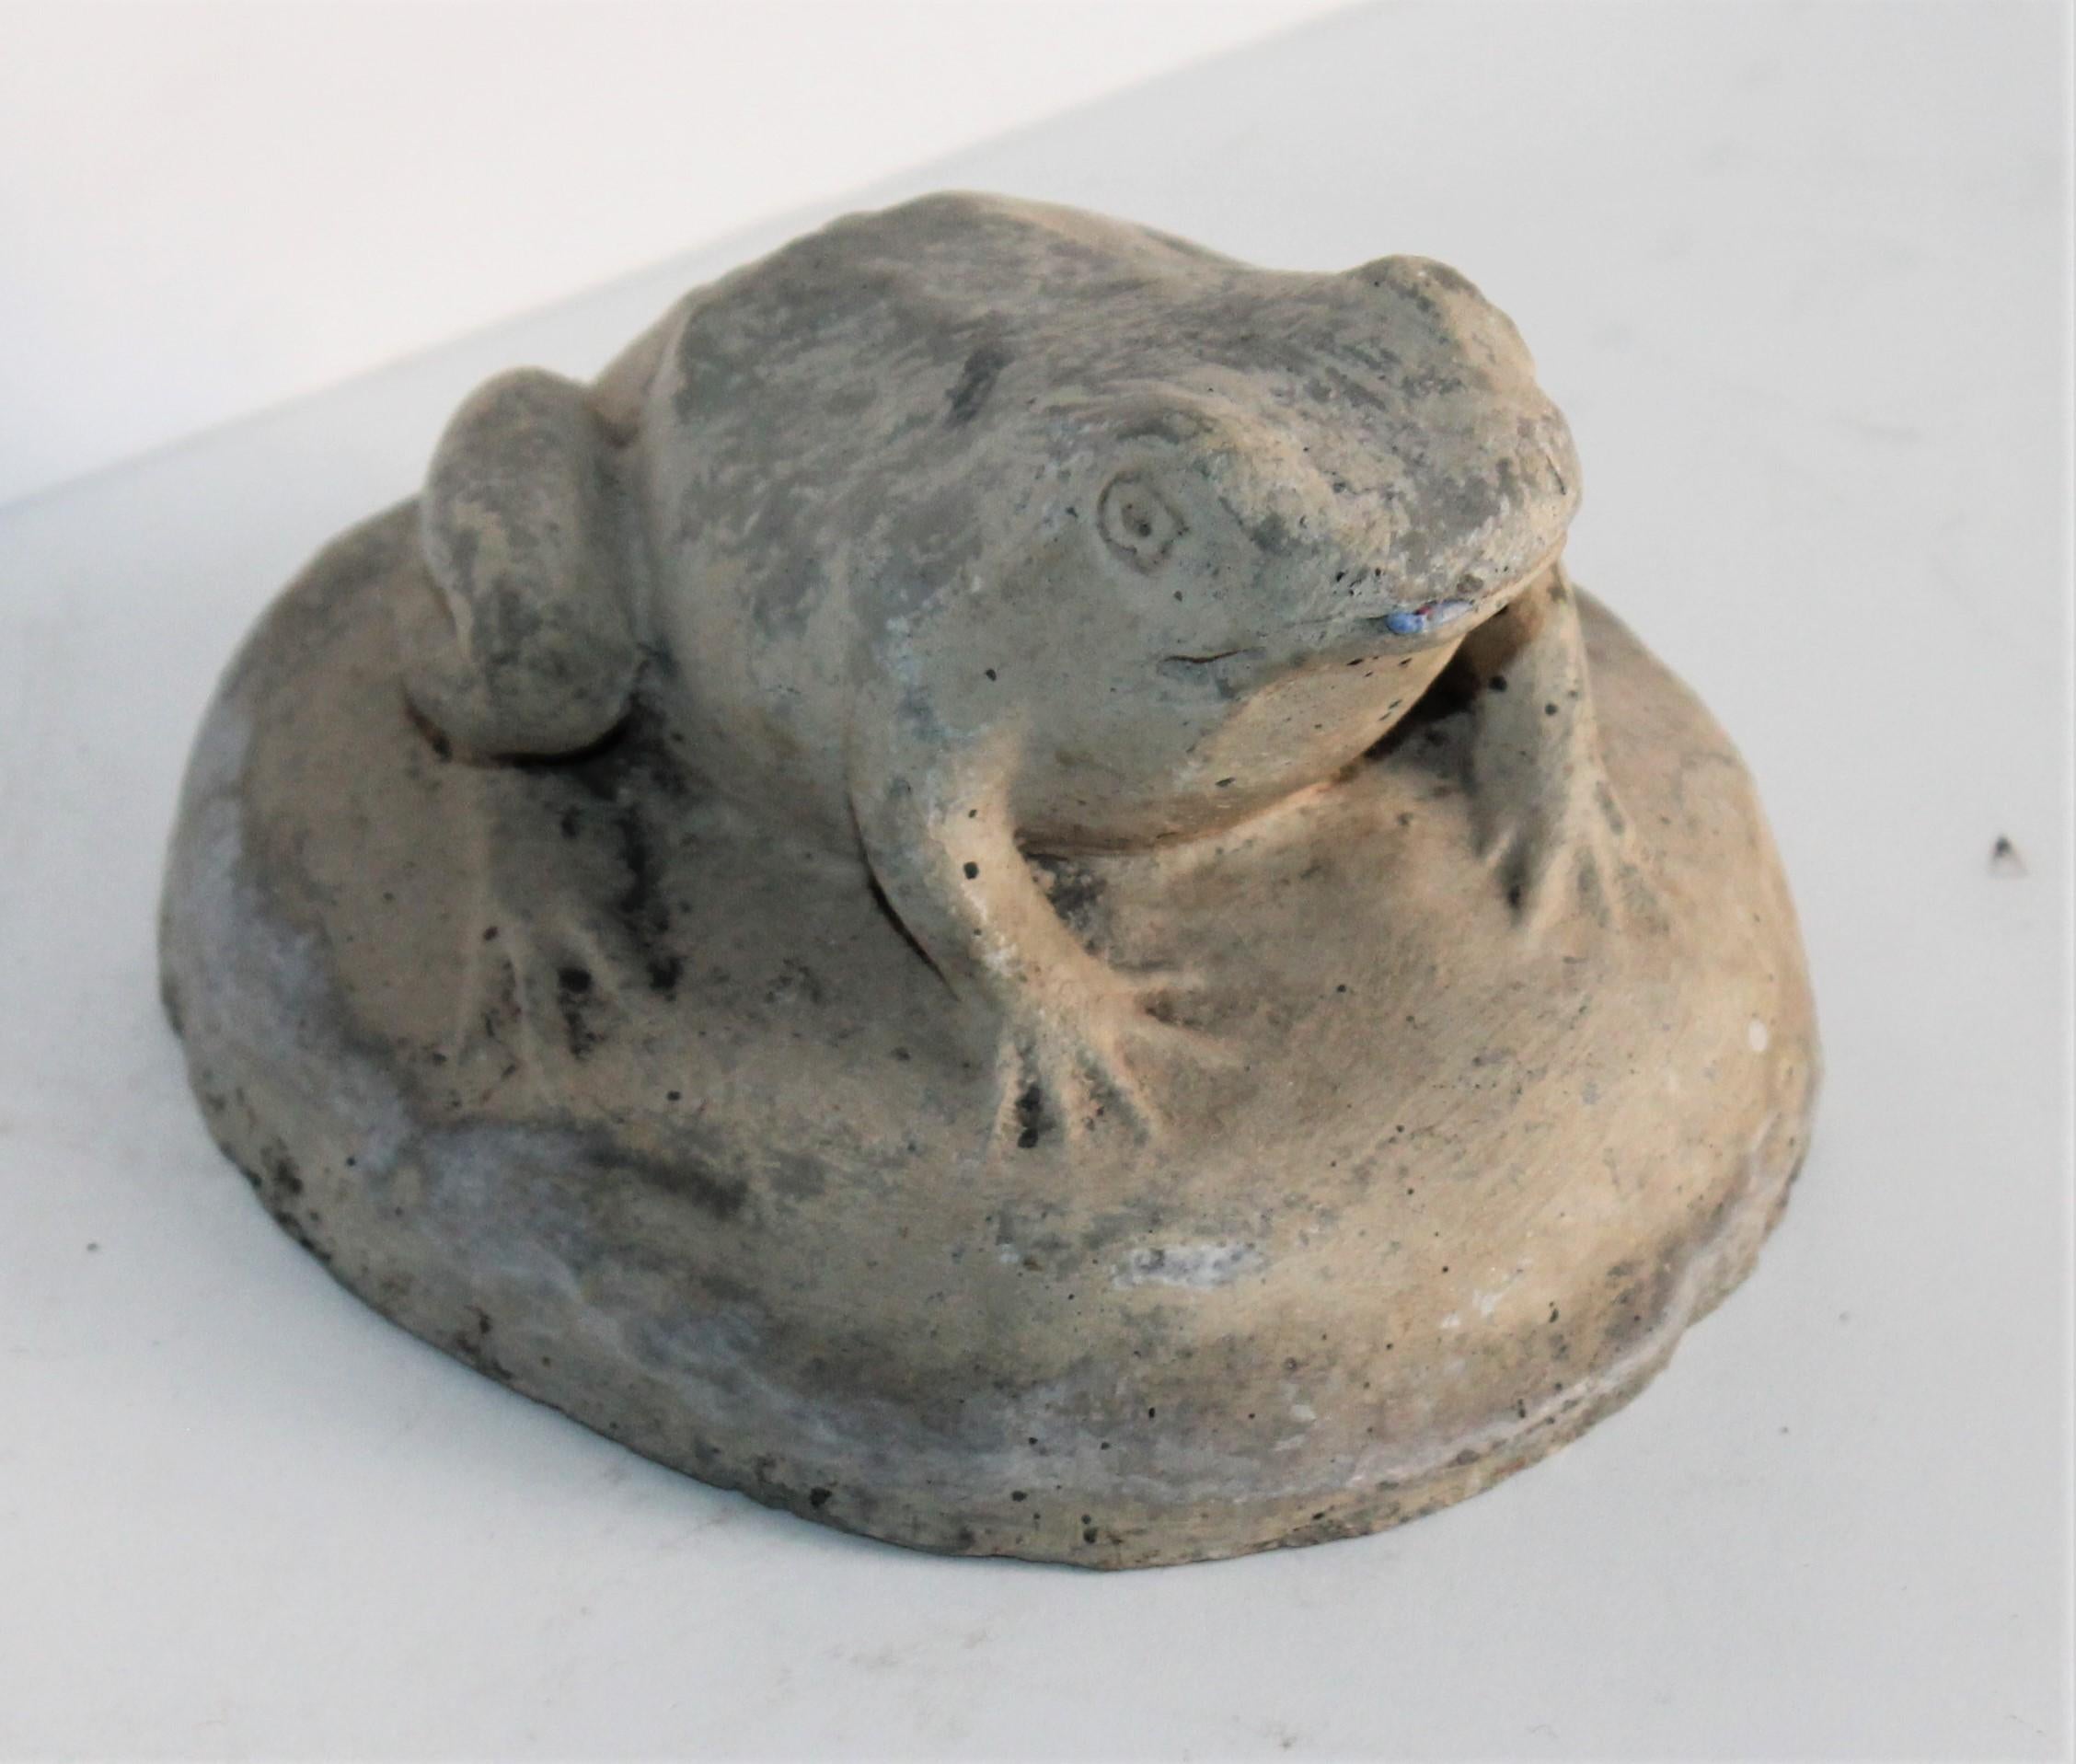 Cette amusante sculpture artisanale d'une grenouille est en bon état avec de petites entailles sur le bord, dues à l'âge et à l'utilisation.